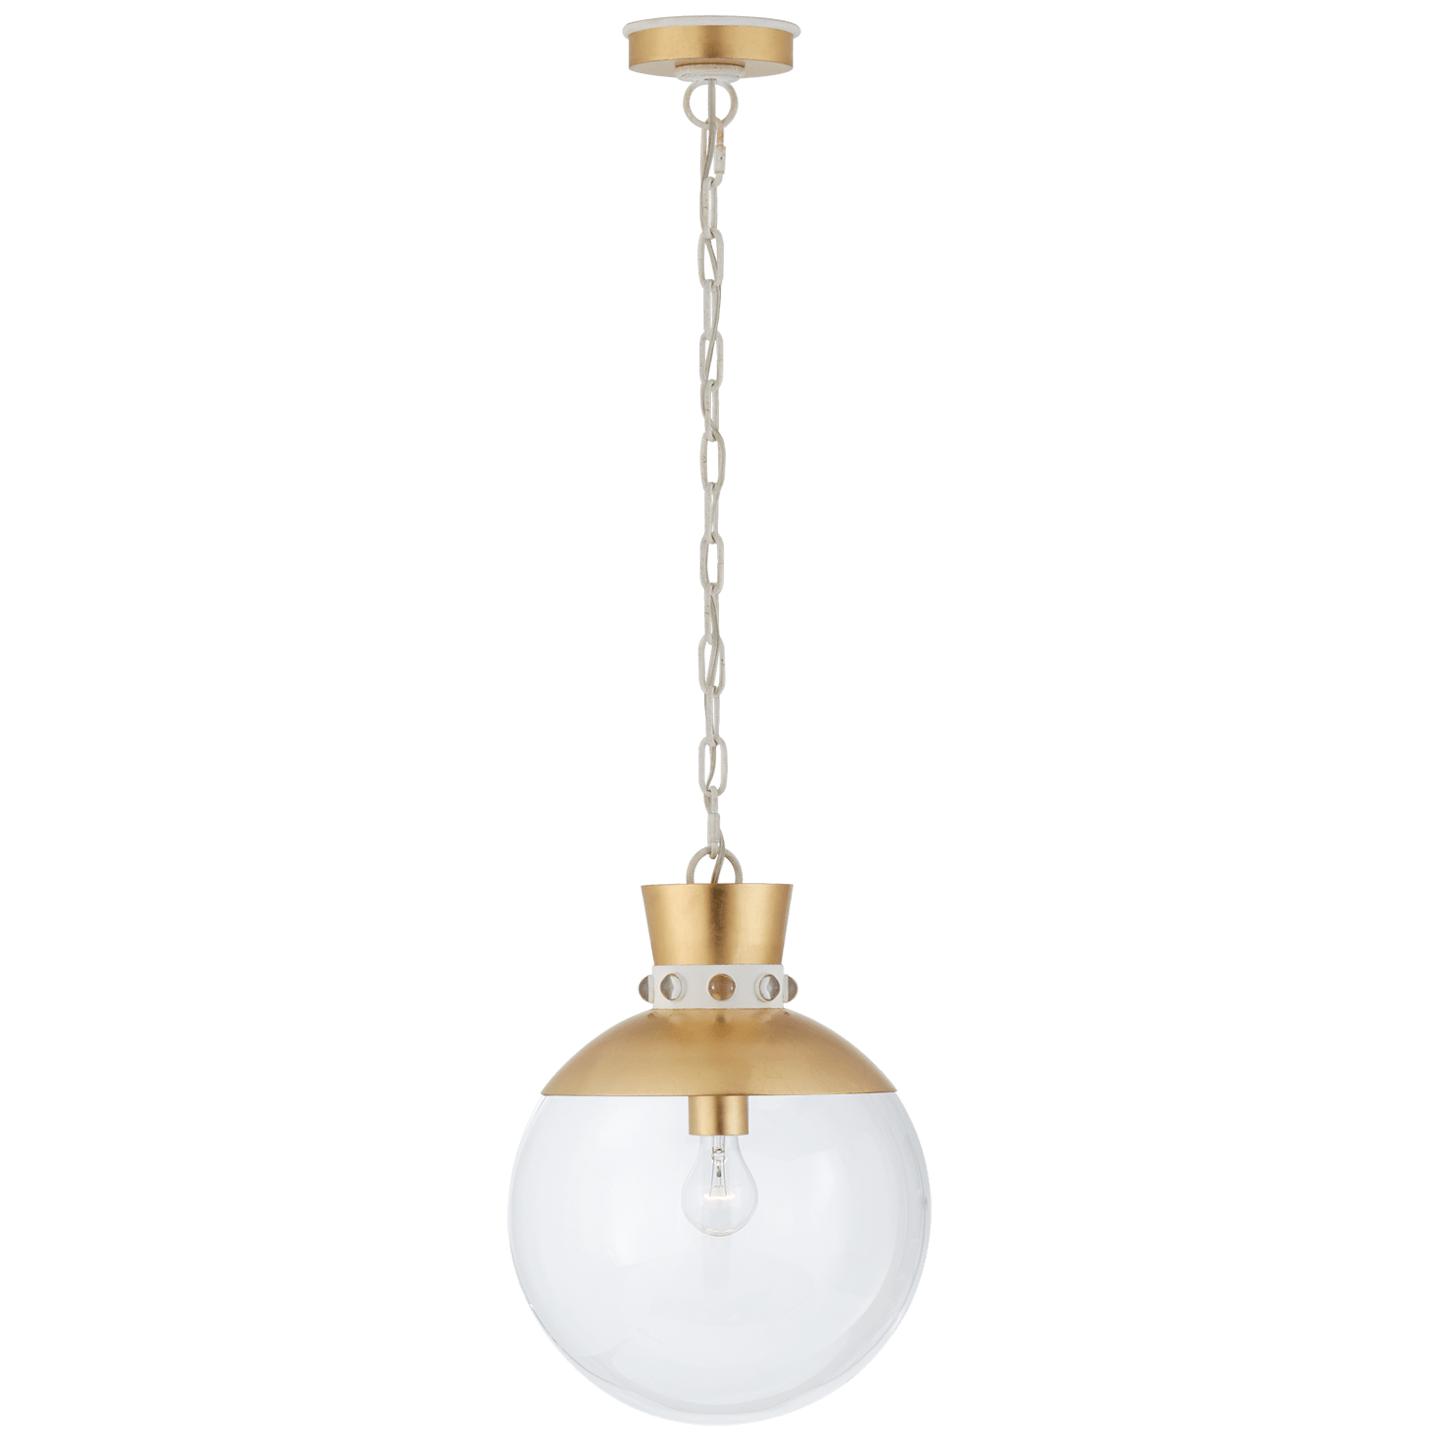 Купить Подвесной светильник Lucia Medium Pendant в интернет-магазине roooms.ru